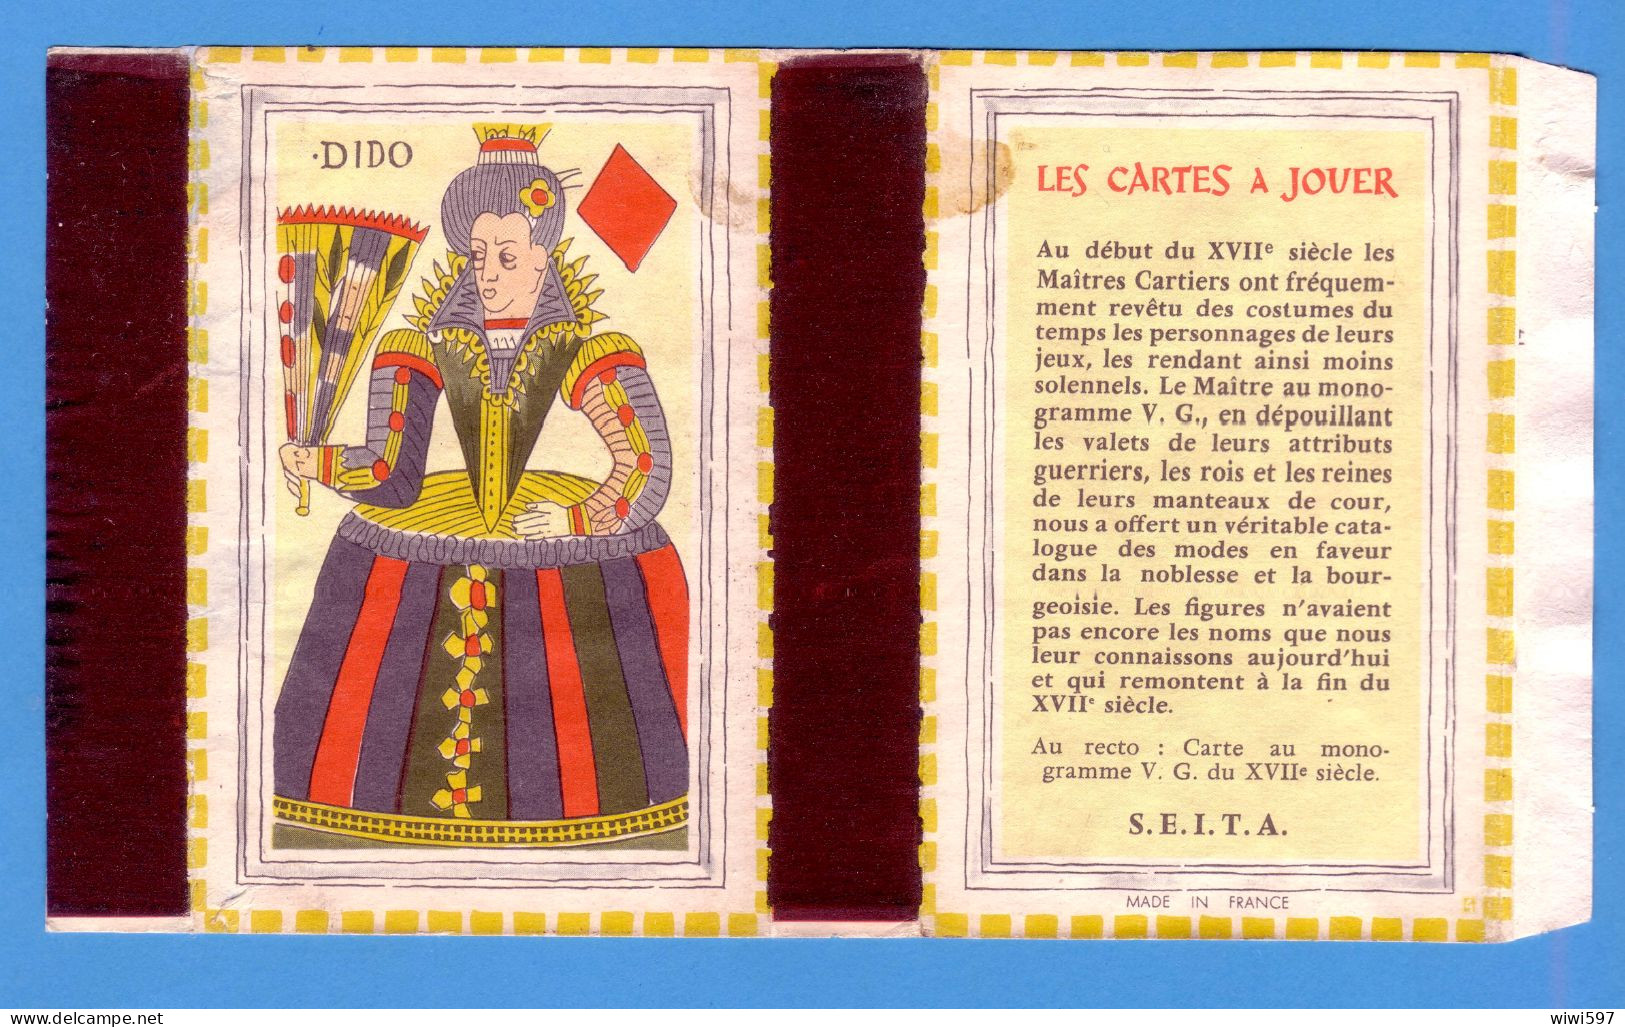 ÉTIQUETTE DE BOITE D'ALLUMETTES - CARTE MONOGRAMME V.G. - DAME DE CARREAU - MADE IN FRANCE DANS LA MARGE - Matchbox Labels